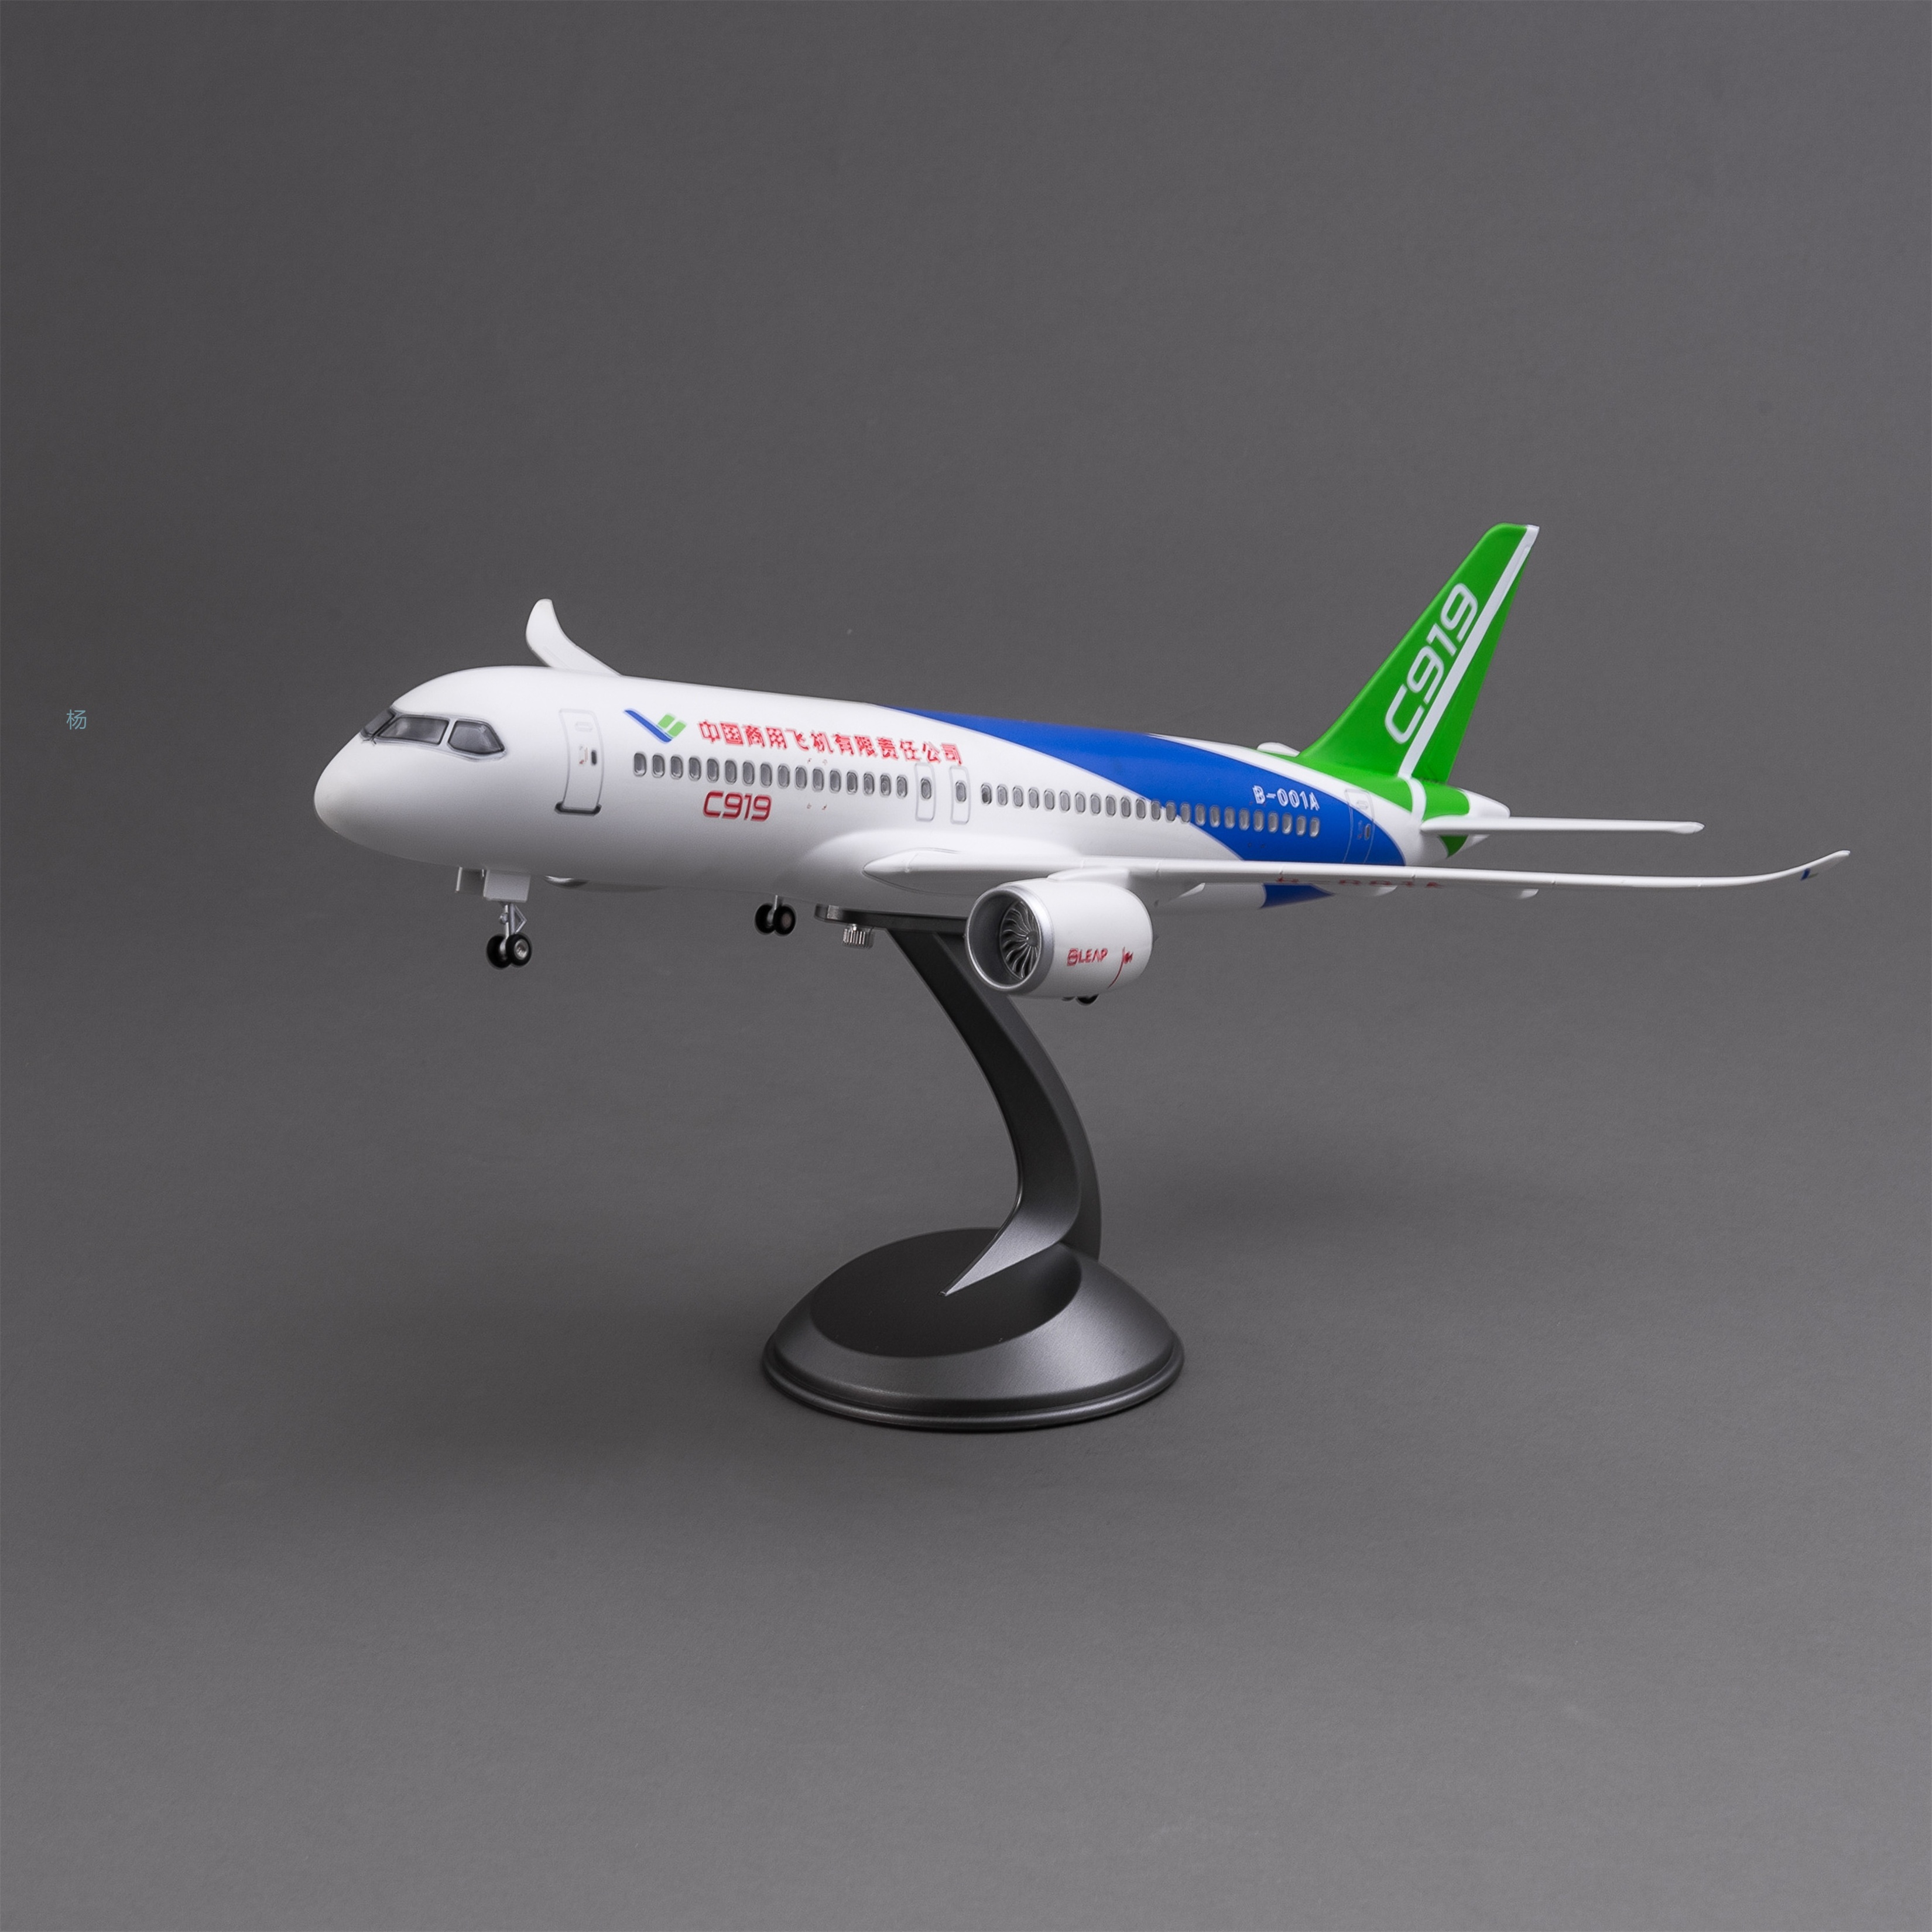 飞机模型（中国商用飞机有限责任公司C919飞机）仿真飞机模型 ABS合成强化树脂飞机模型航空飞机模型详情1